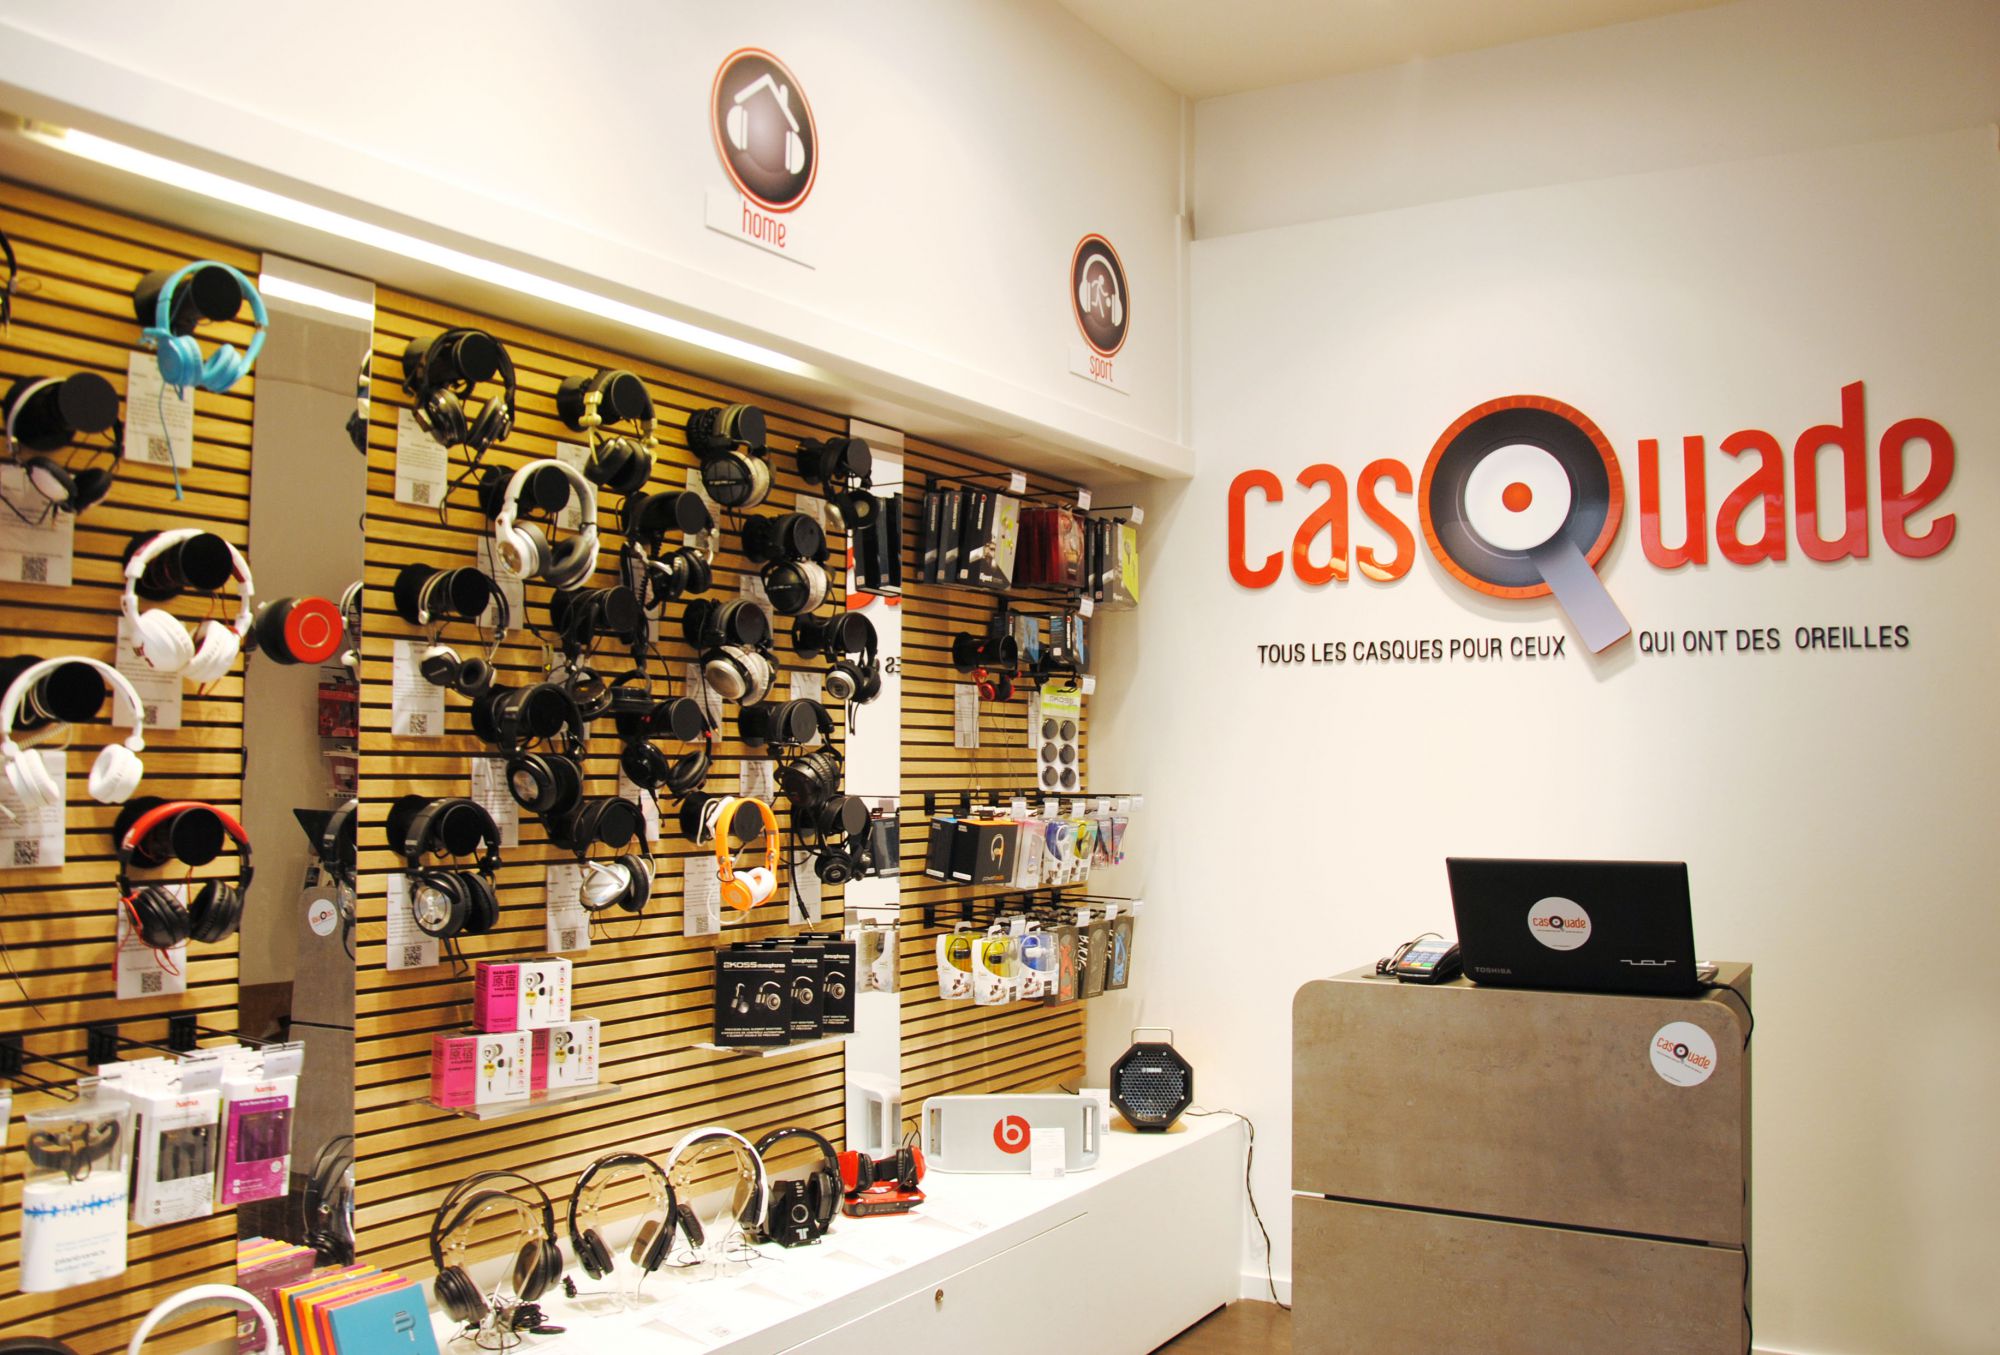 Intérieur du magasin Casquade